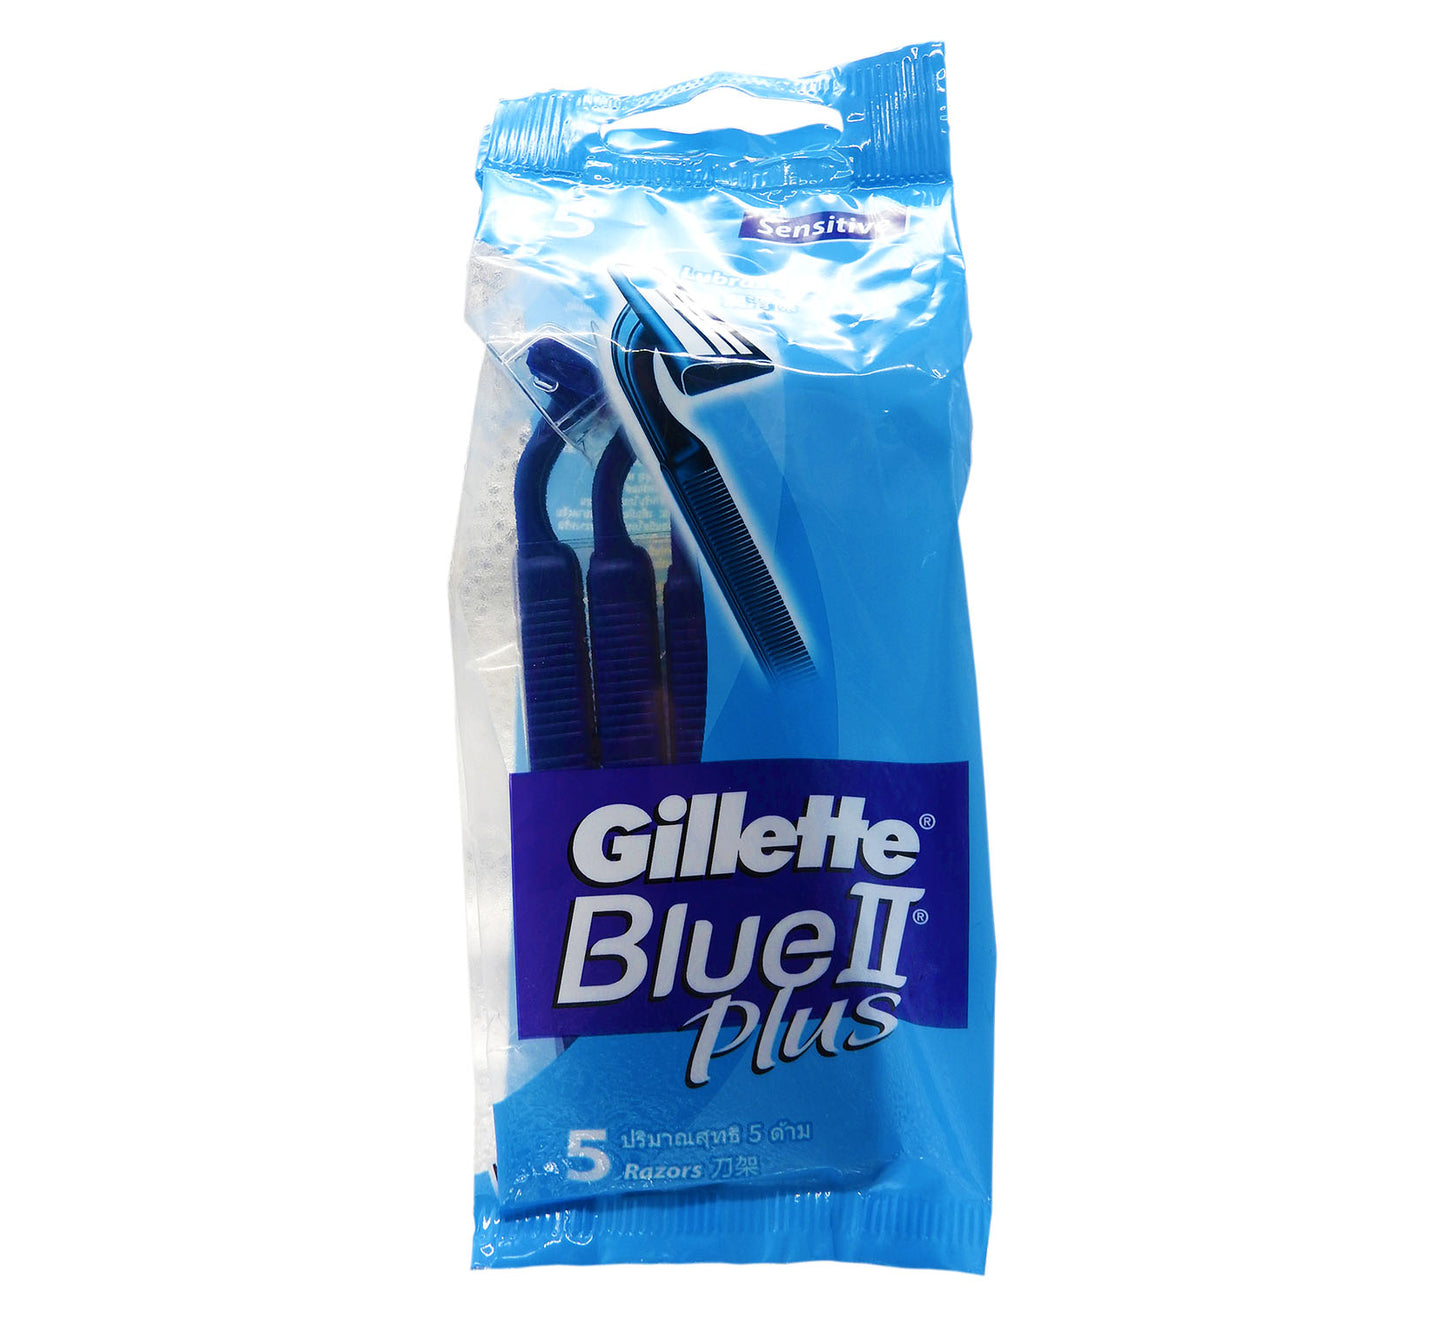 吉列 - Gillette 防滑柄雙層刀片超滑輕便刀  5刀架 #9778